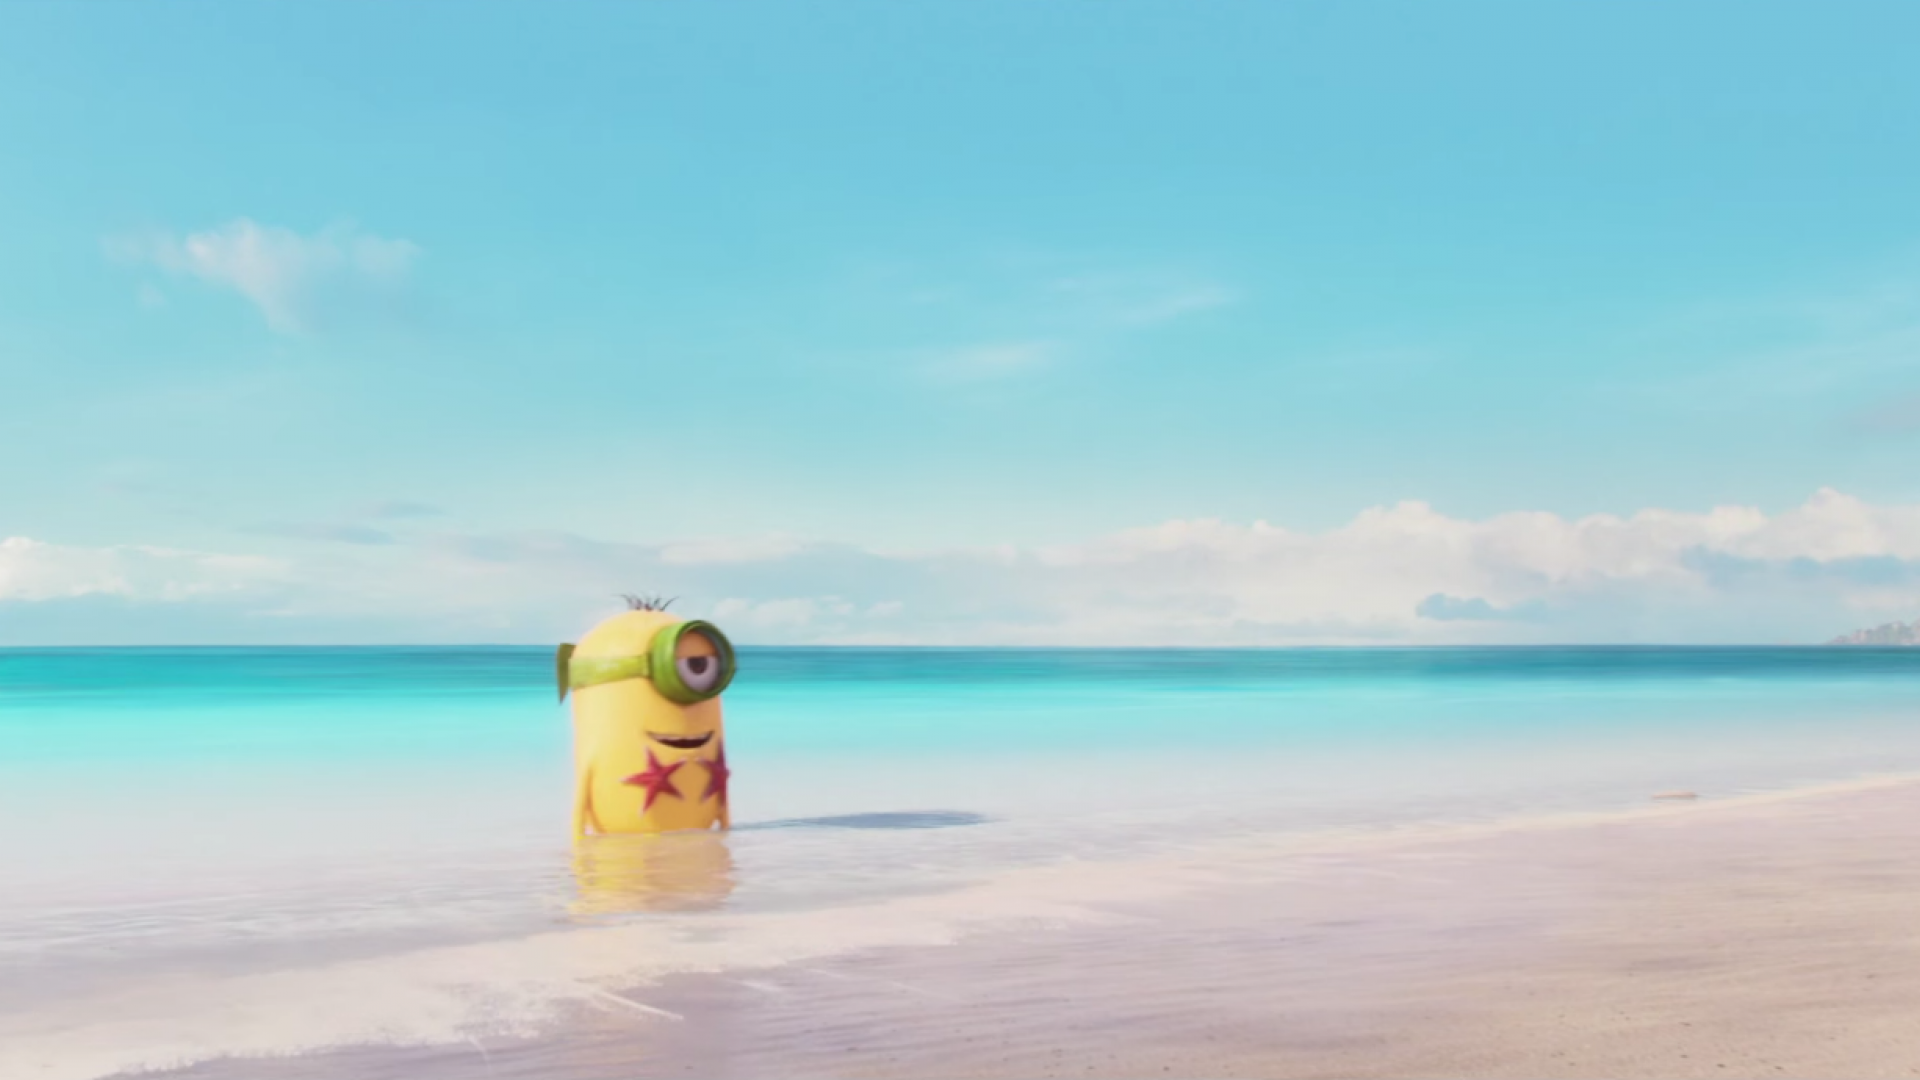 Beach Bikini Minion 1080p Wallpaper Minions